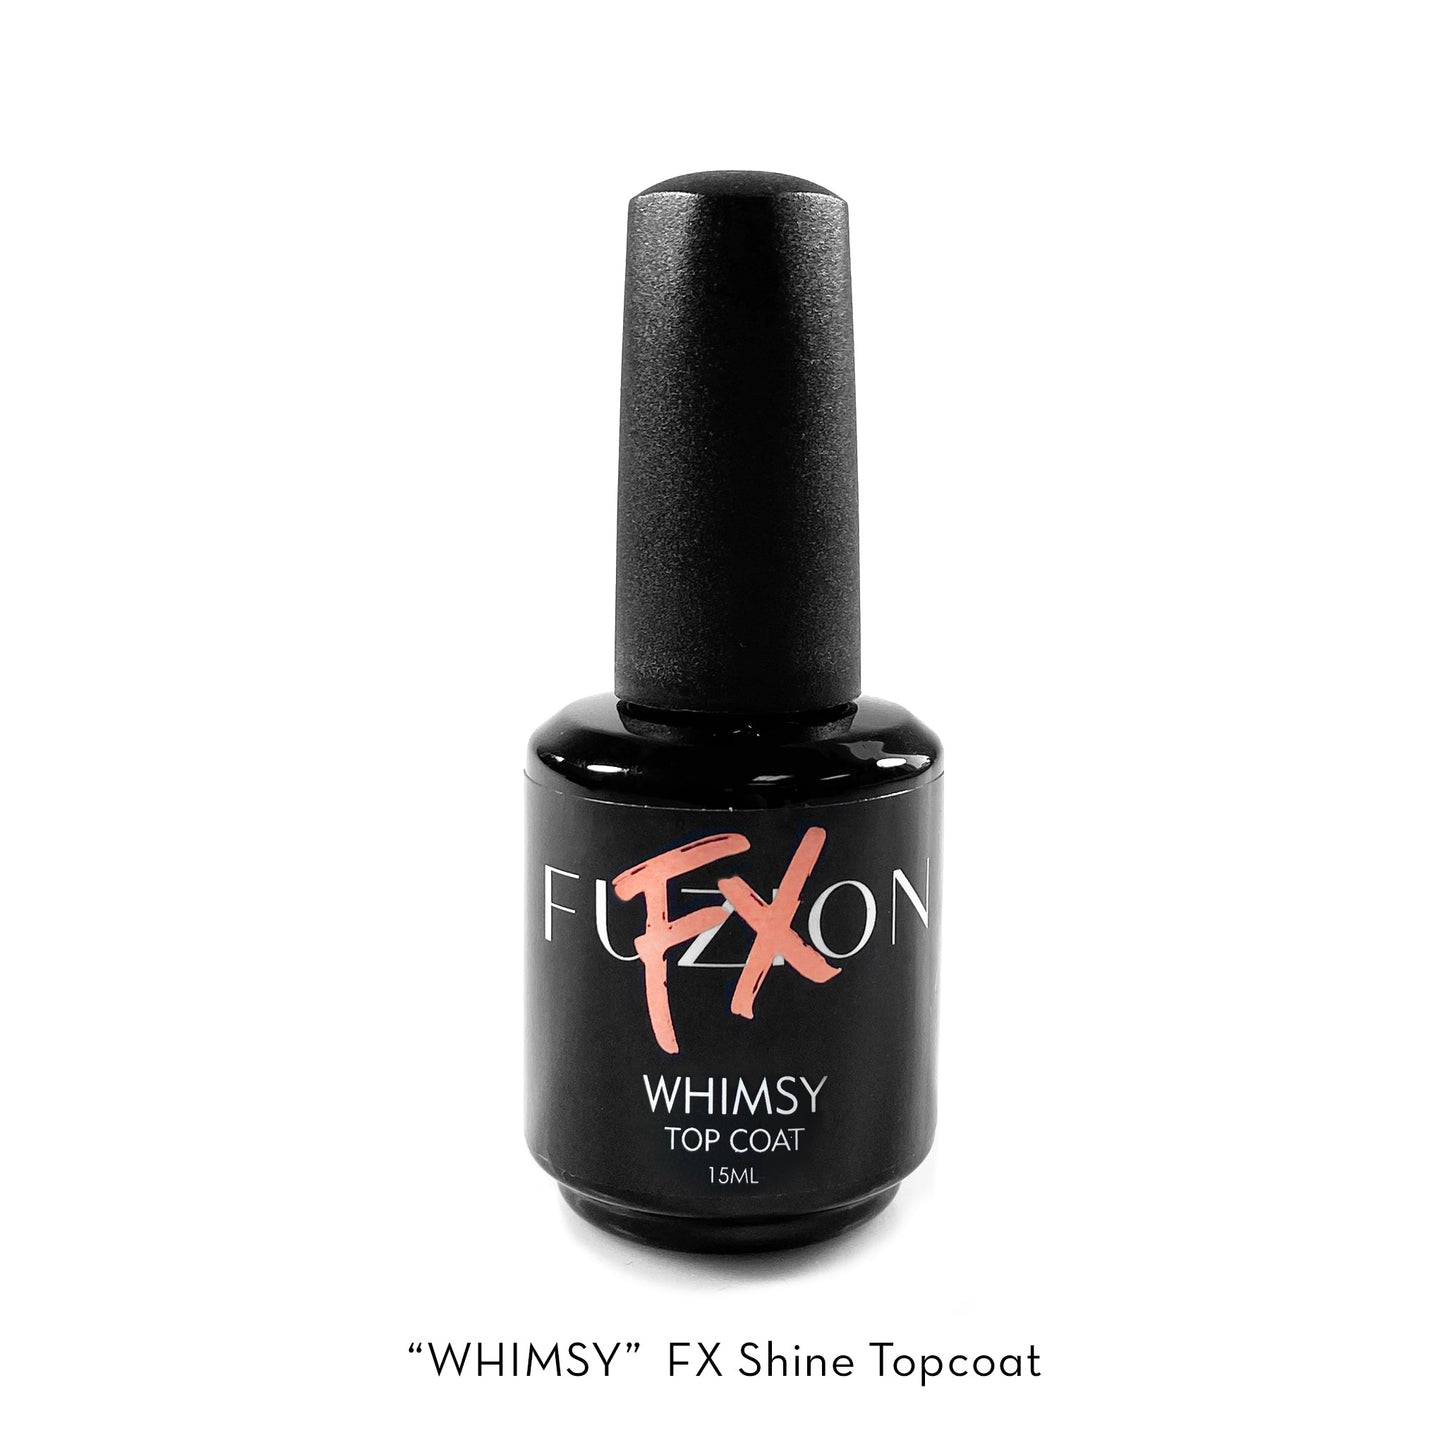 New! Whimsy | FX Shiny Topcoat | 15ml